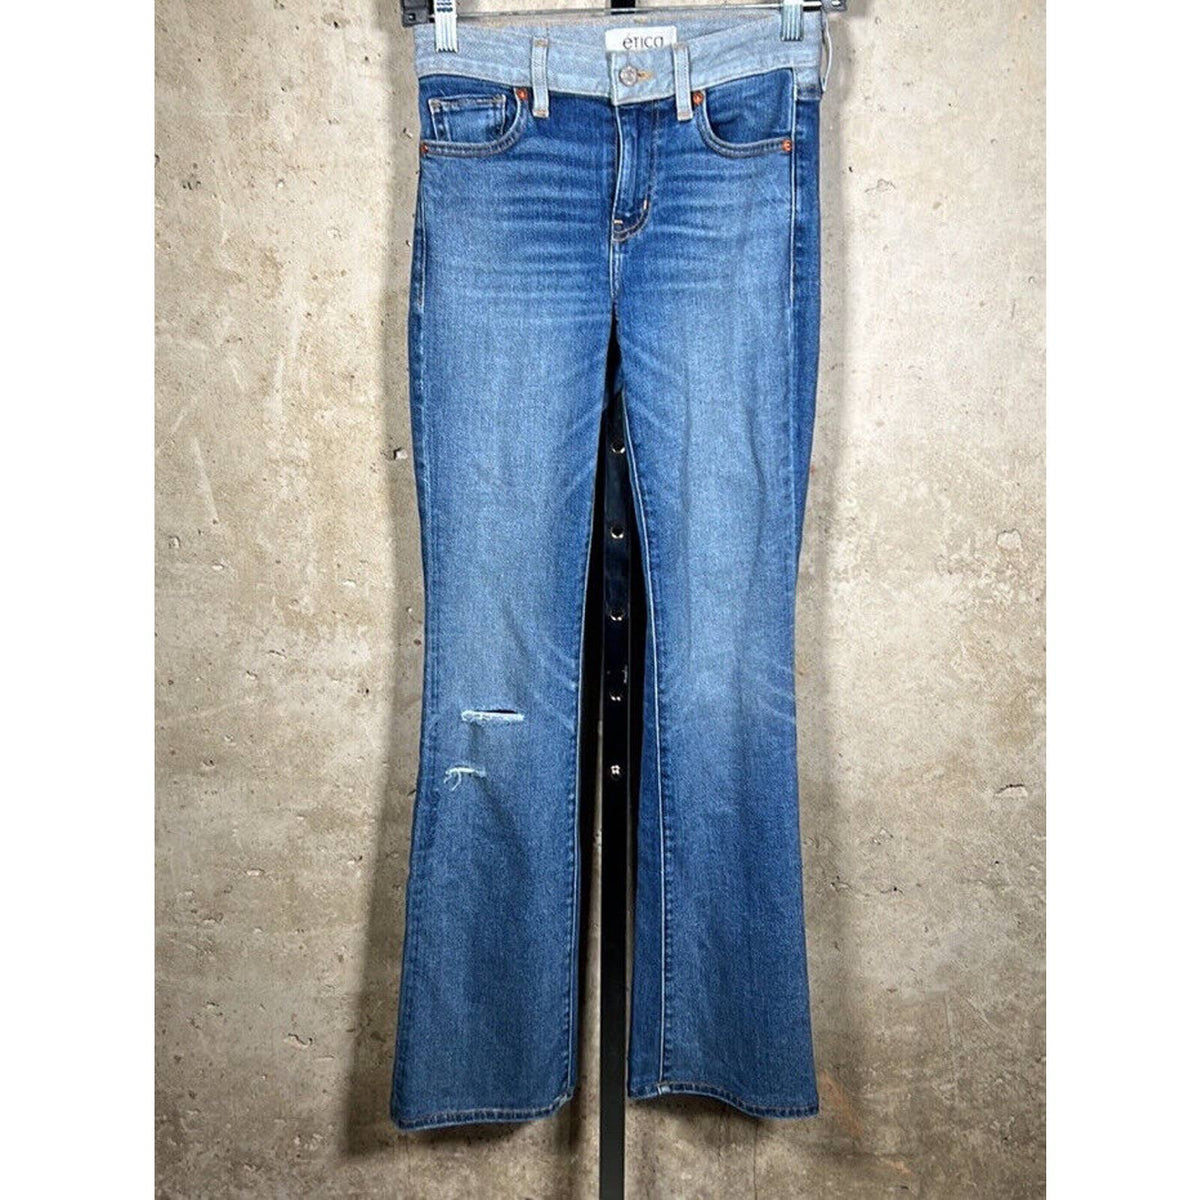 Etica Kelly Slit Bootcut Jeans Sz. 24